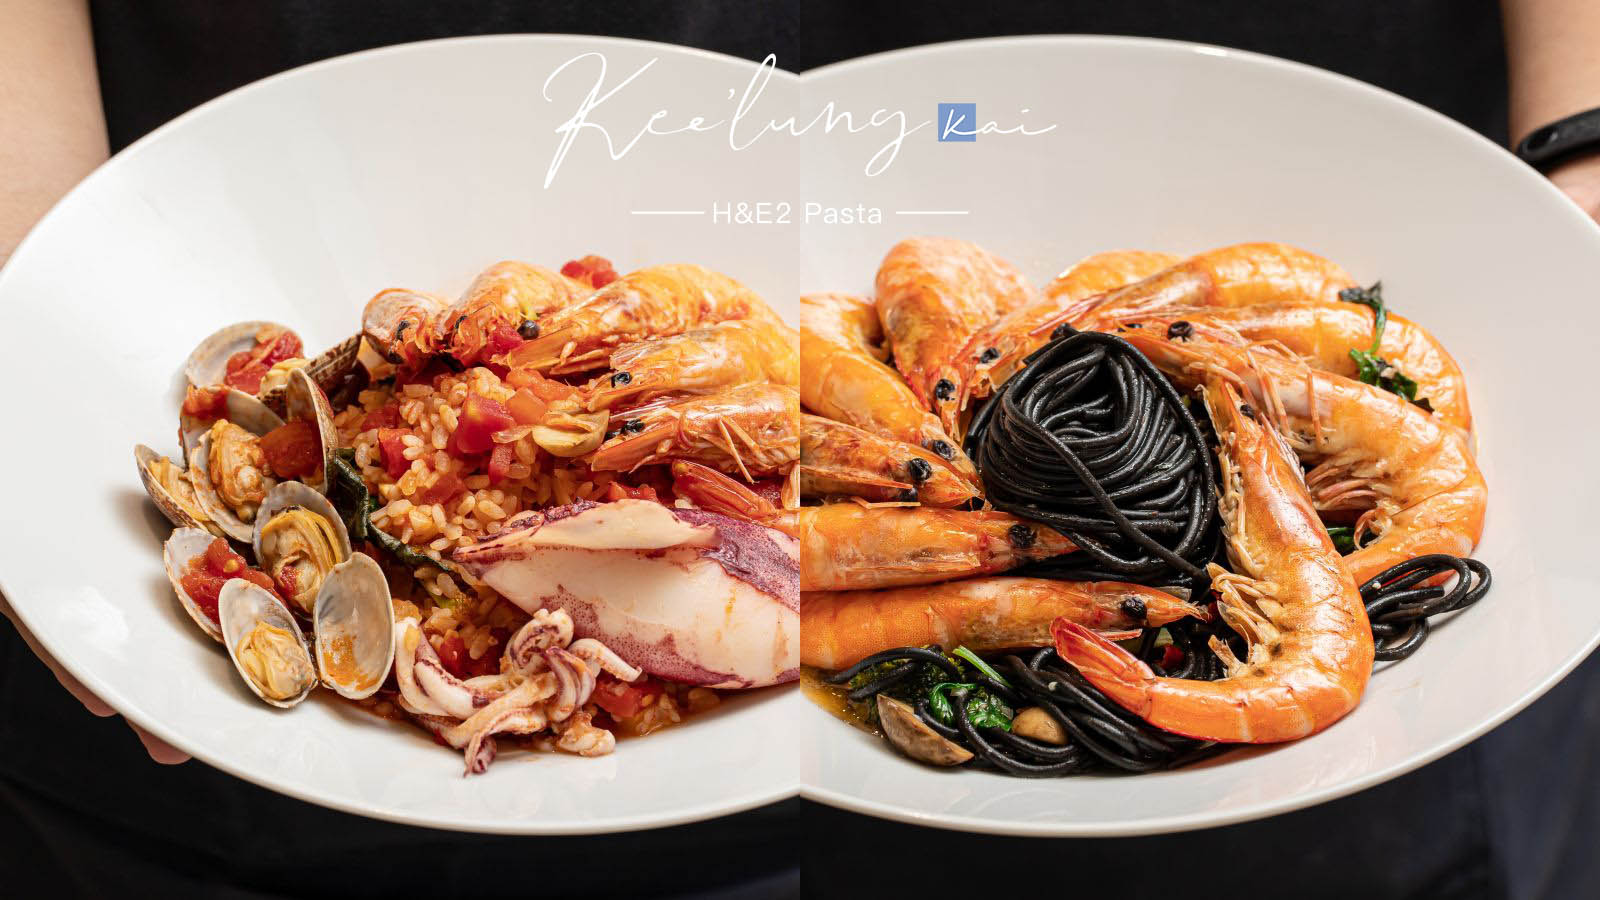 延伸閱讀：☆【基隆】H&E2 Pasta。浮誇系爆量海鮮義大利麵 蝦蝦整圈撲起來不手軟